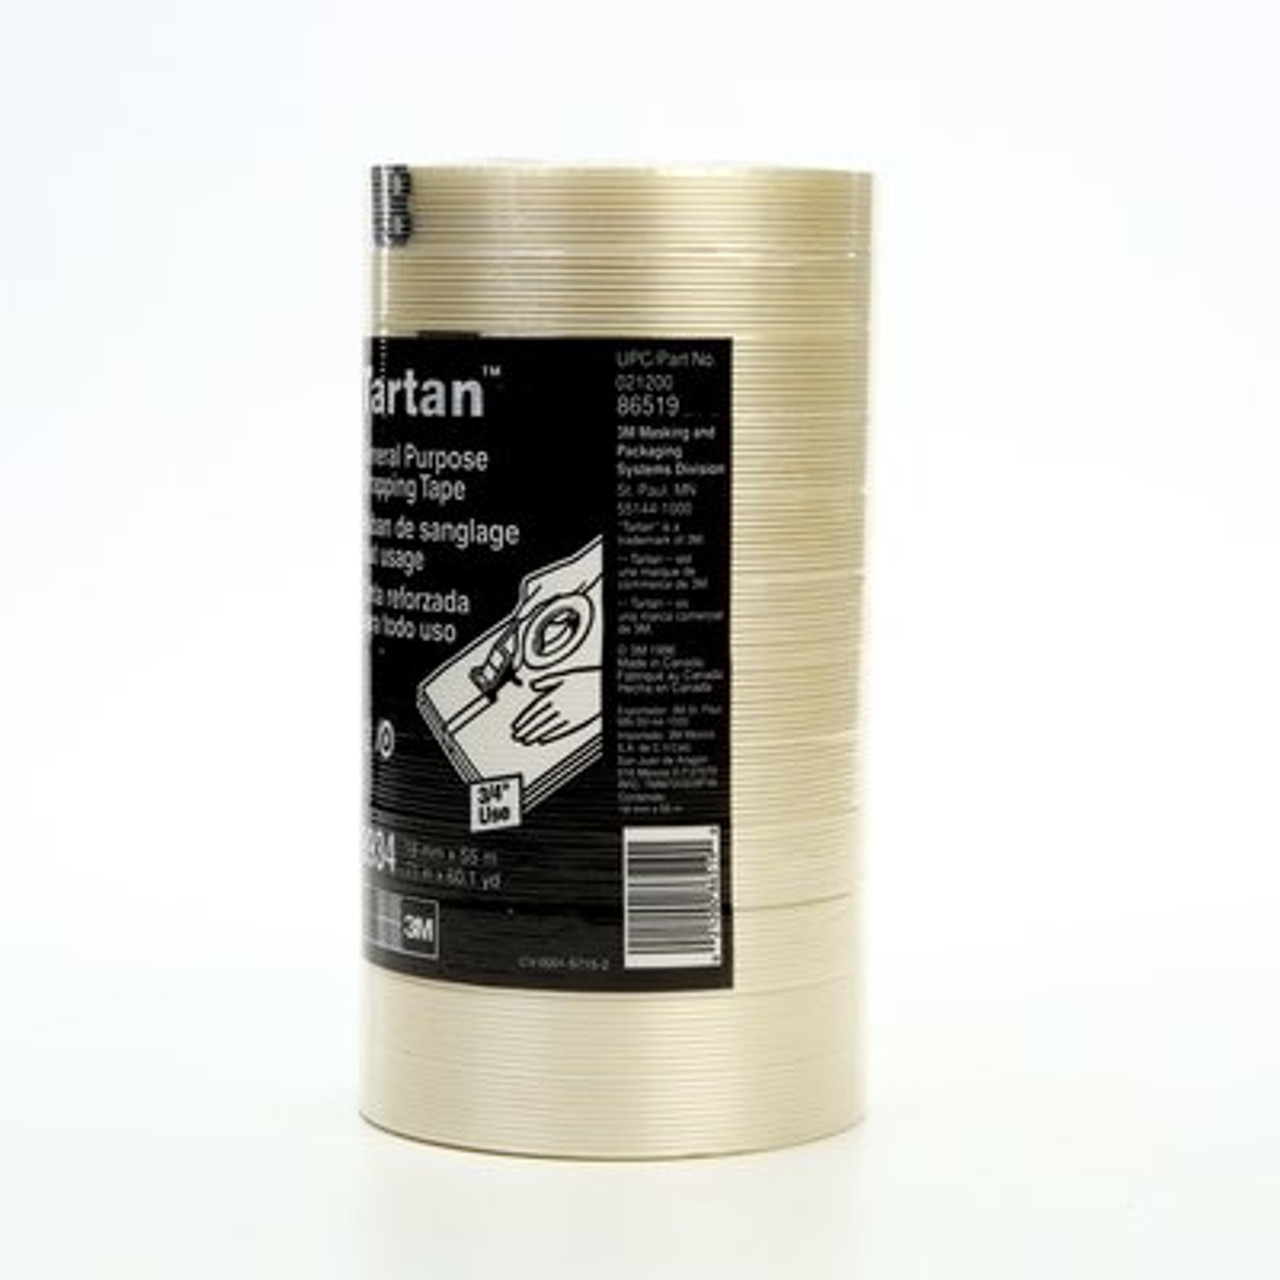 Tartan™ Filament Tape 8934 Clear, 18 mm x 55 m